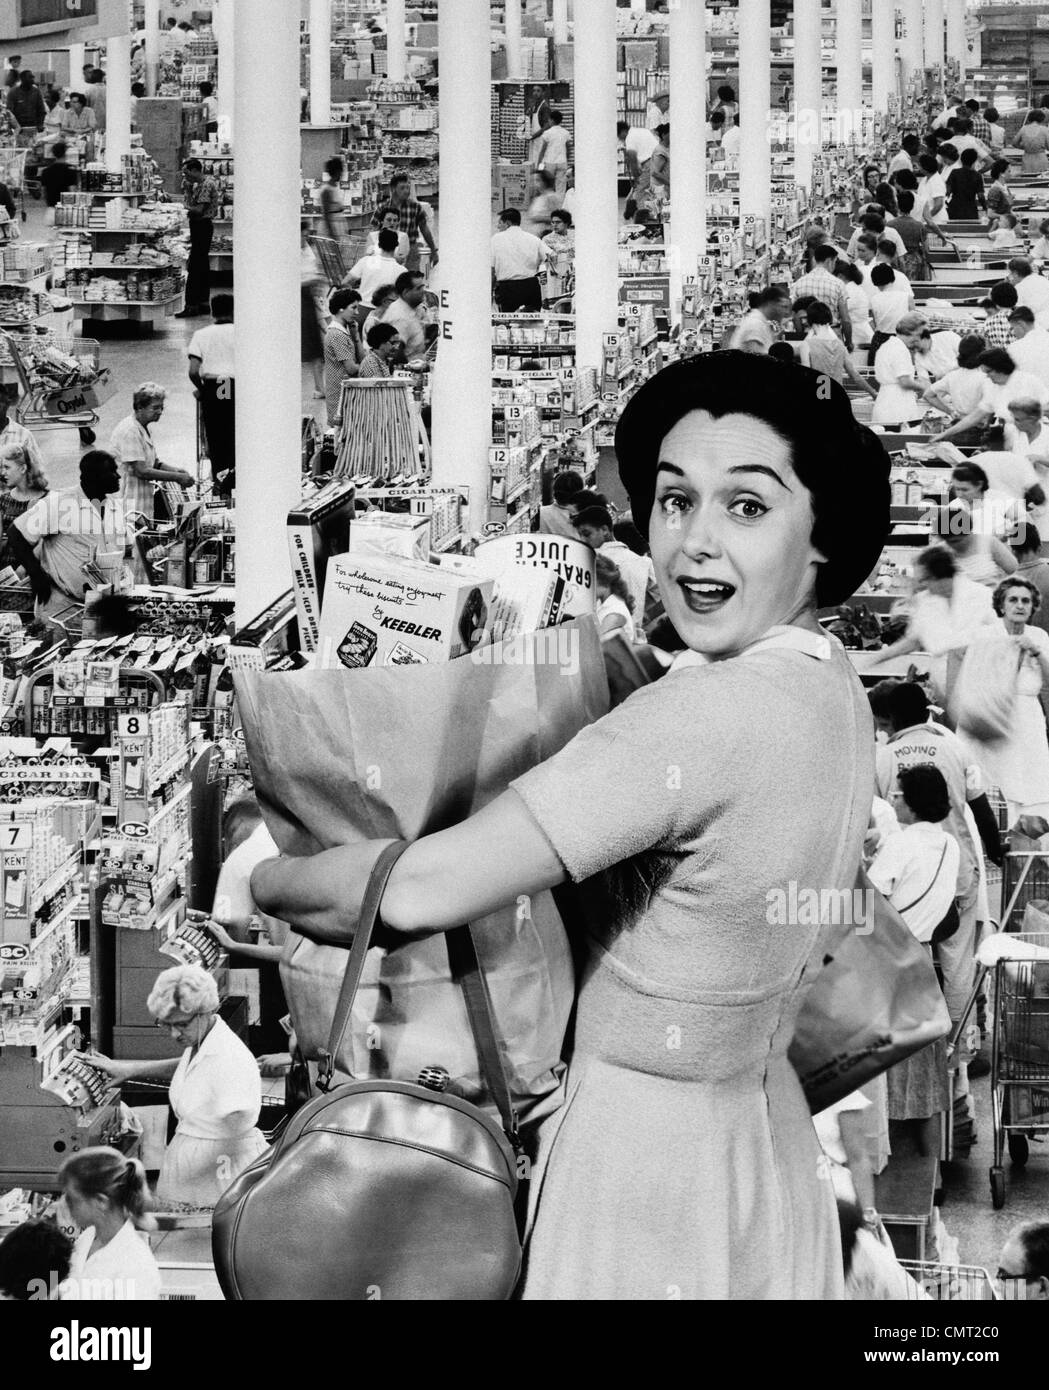 Femme au foyer des années 60, LOOKING AT CAMERA HOLDING GROCERY BAG SUPERPOSÉ SUR ÉPICERIE CHECK-OUT LINES Banque D'Images